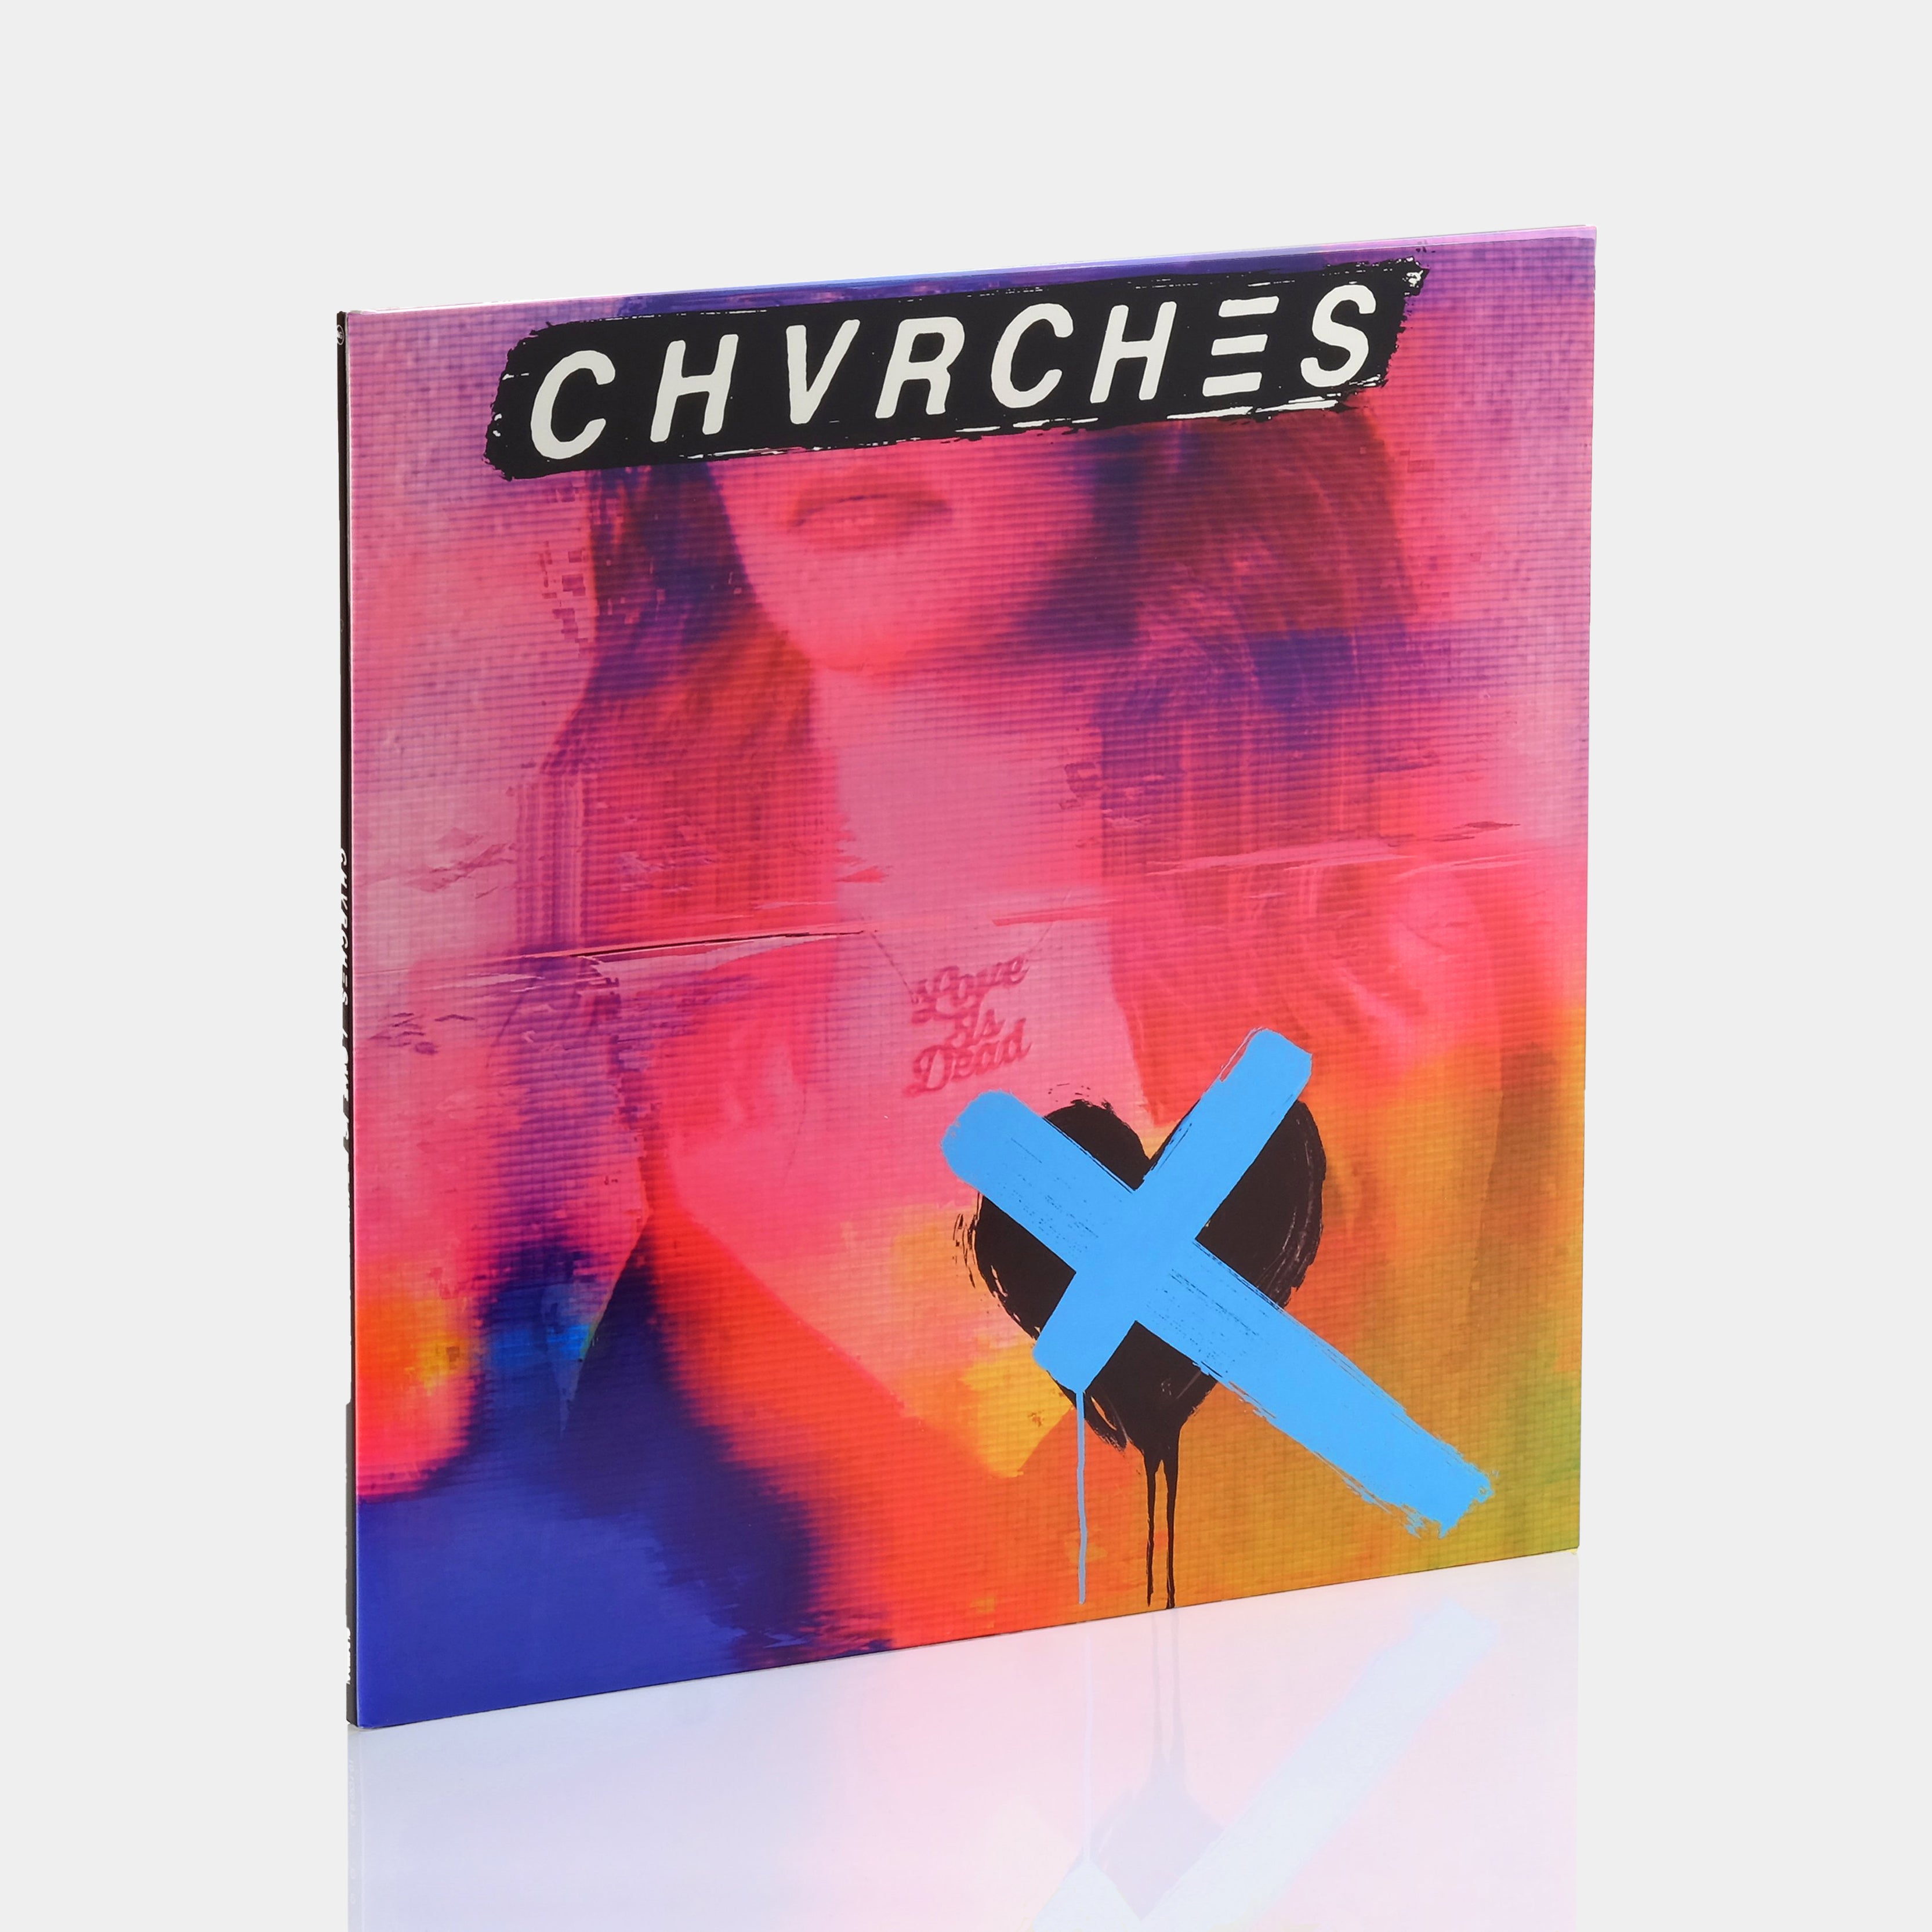 Chvrches - Love Is Dead LP Blue Vinyl Record